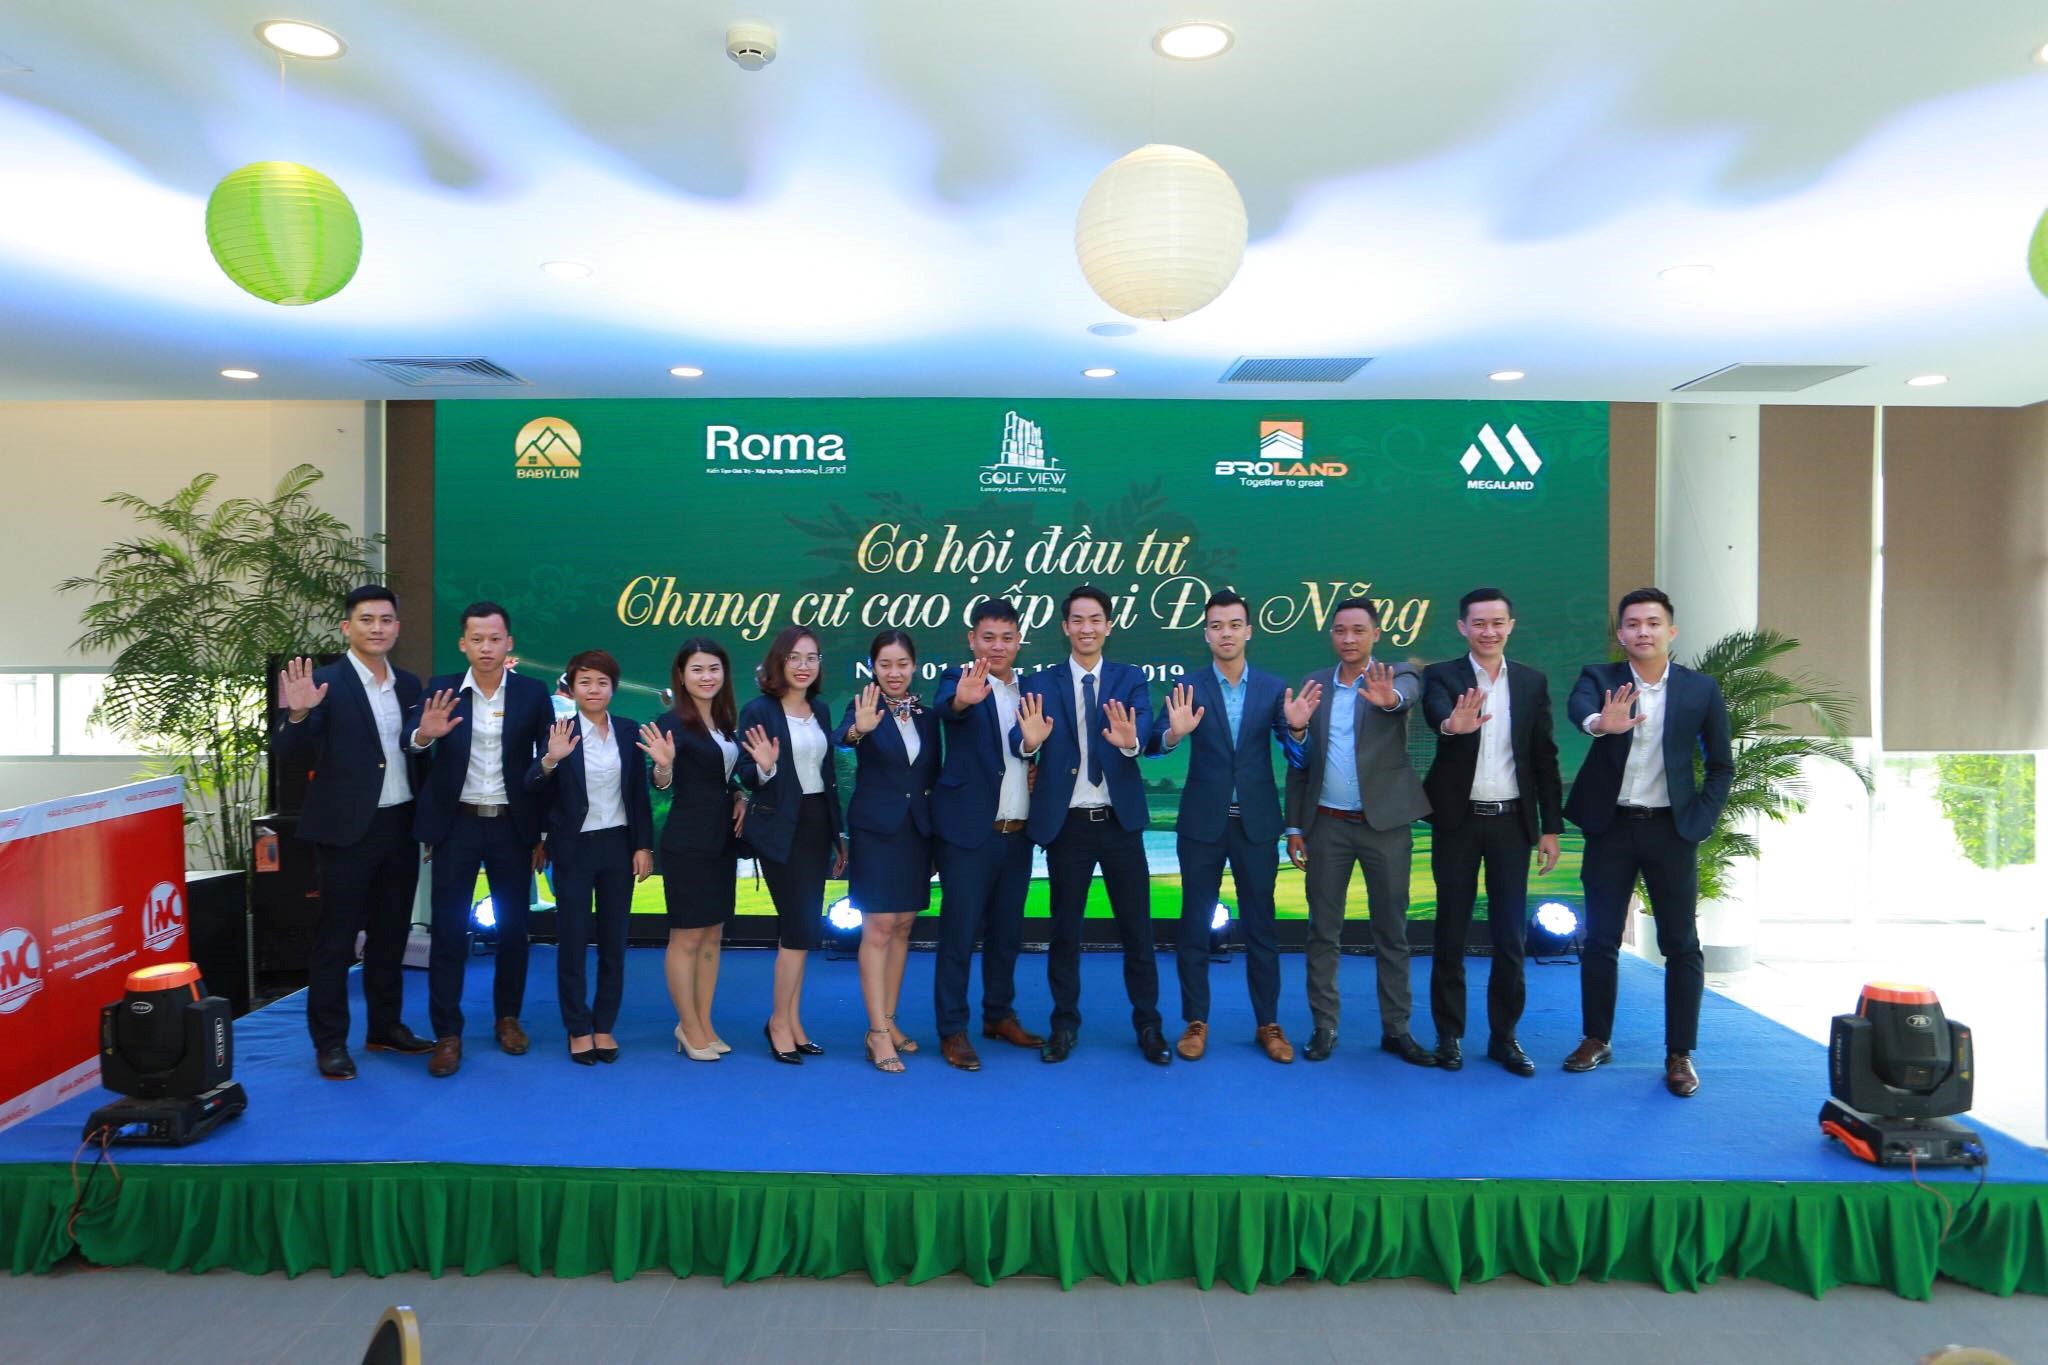 Dịch vụ | tổ chức khai ra mắt sản phẩm GOLD VIEW LUXURY APARTMENT tại Đà Nẵng